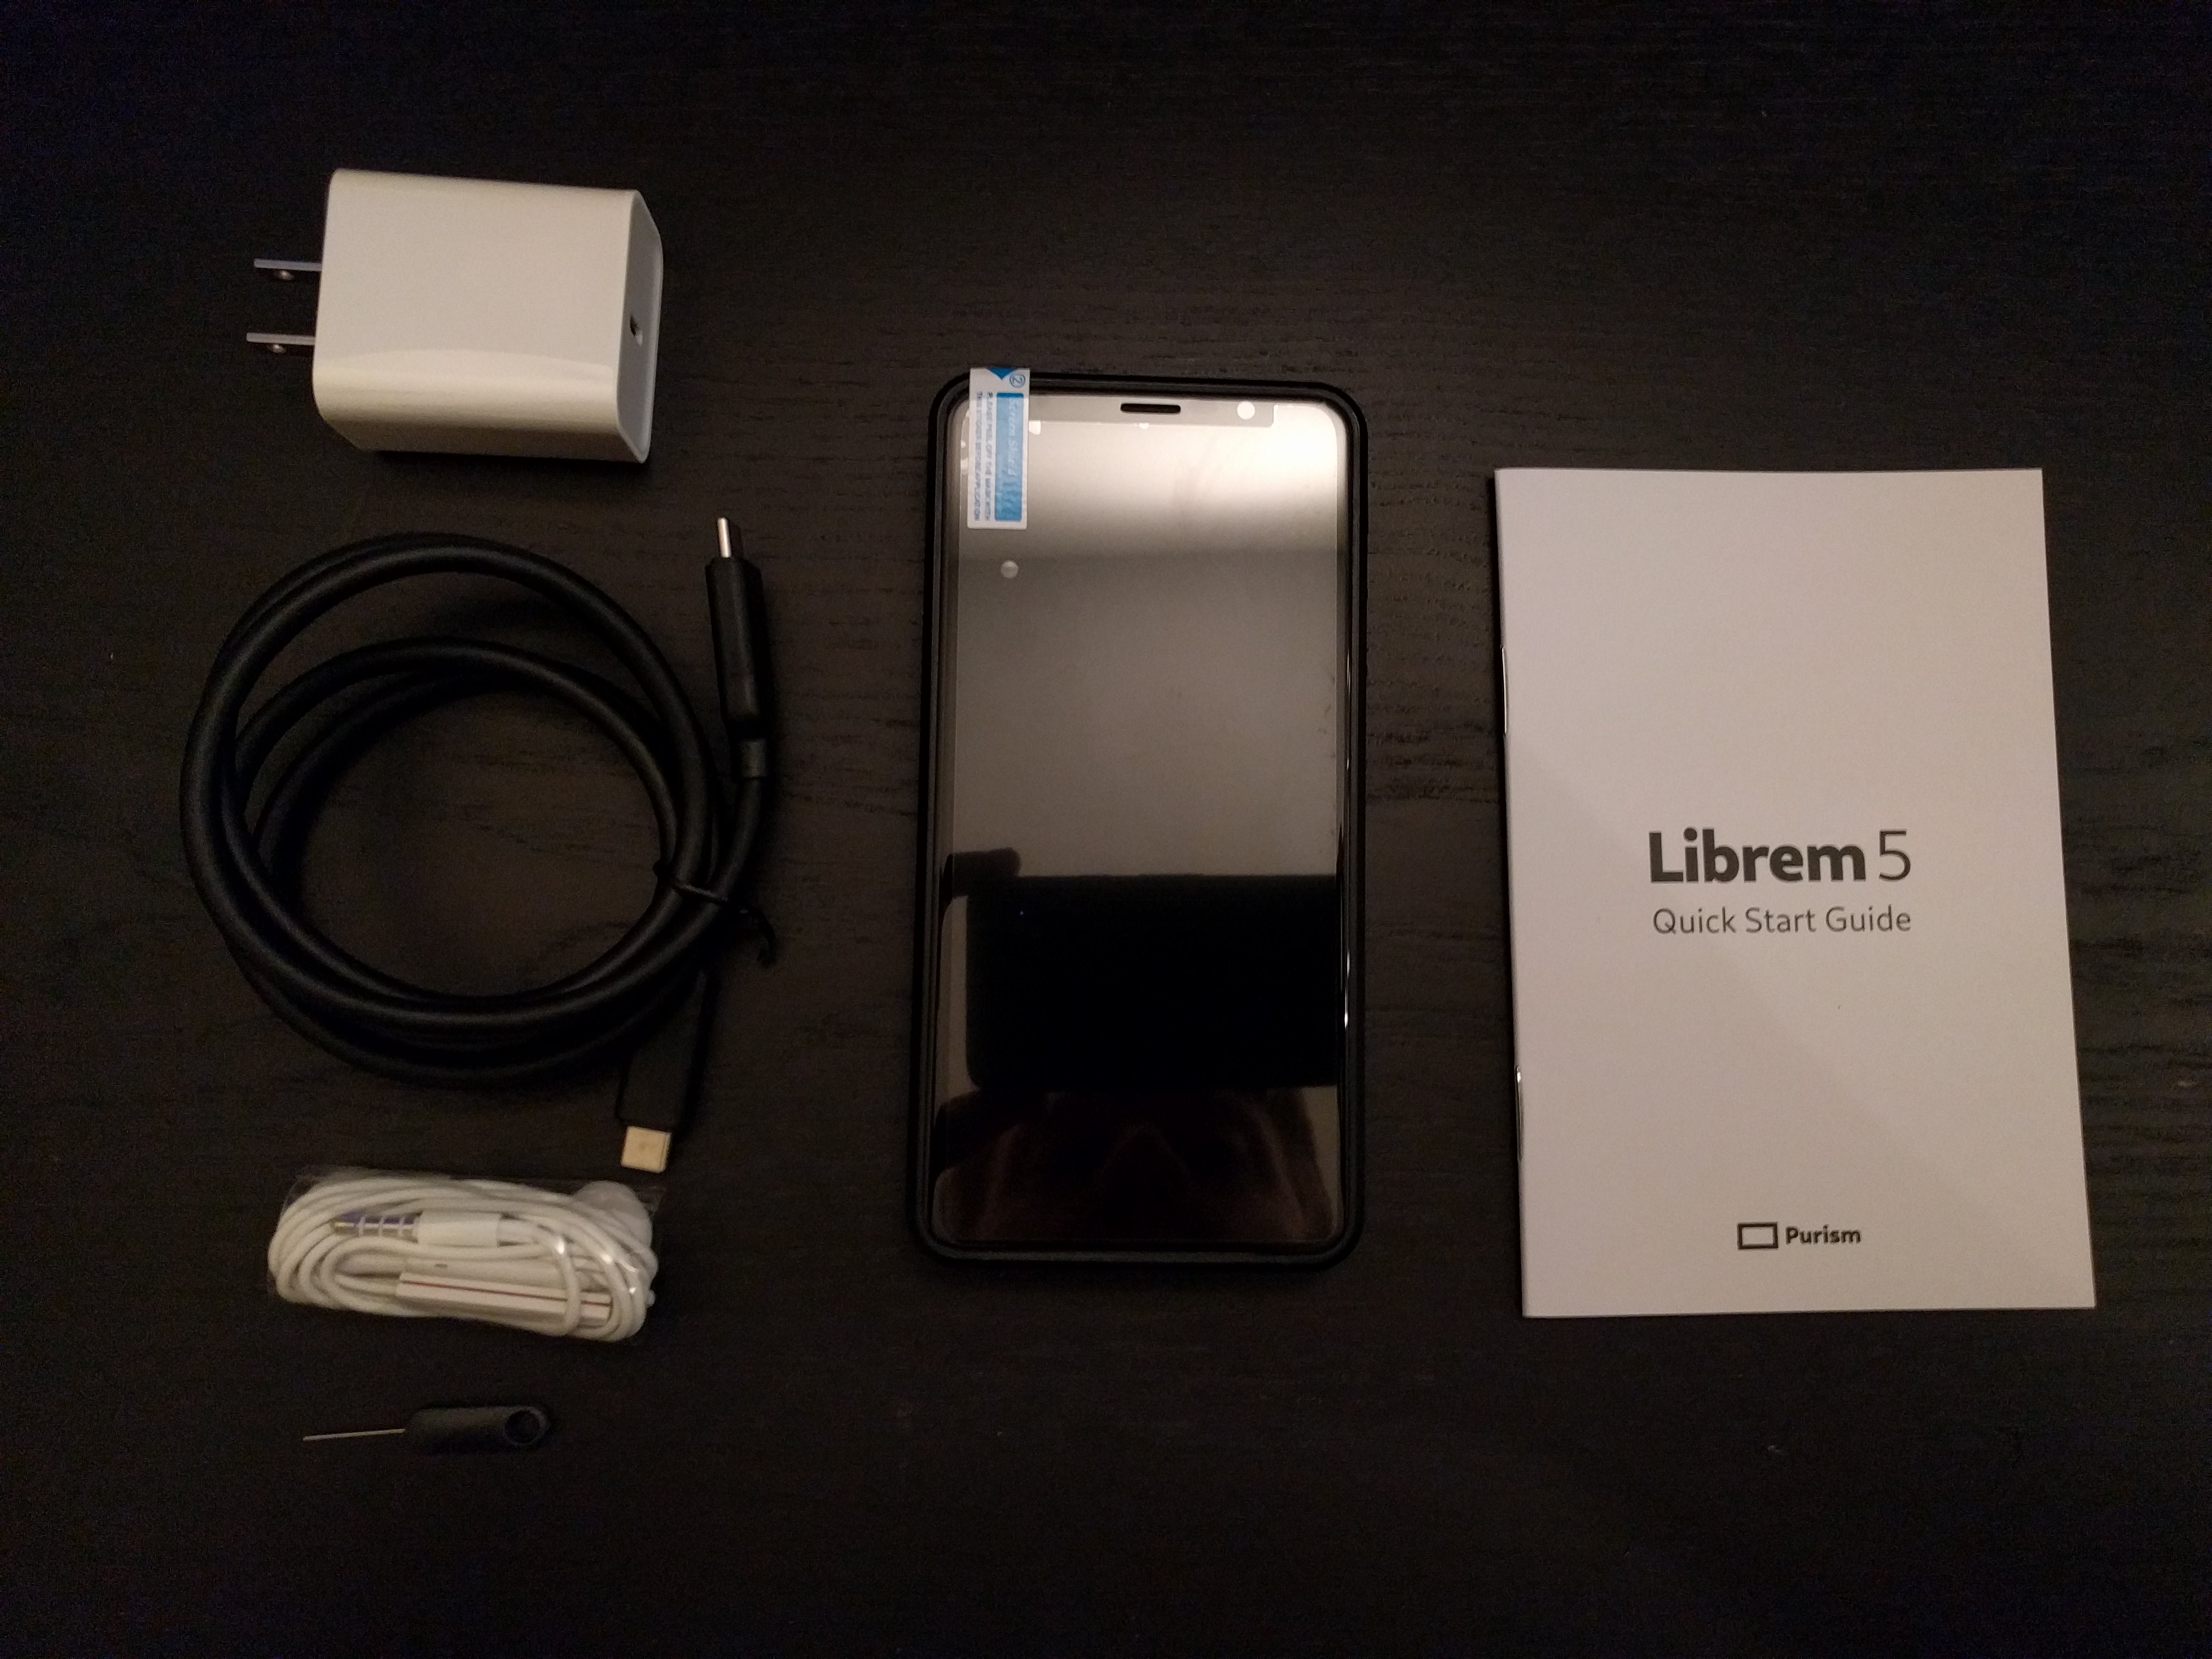 开源 Linux 手机 Librem 5 的首批支持者分享使用体验